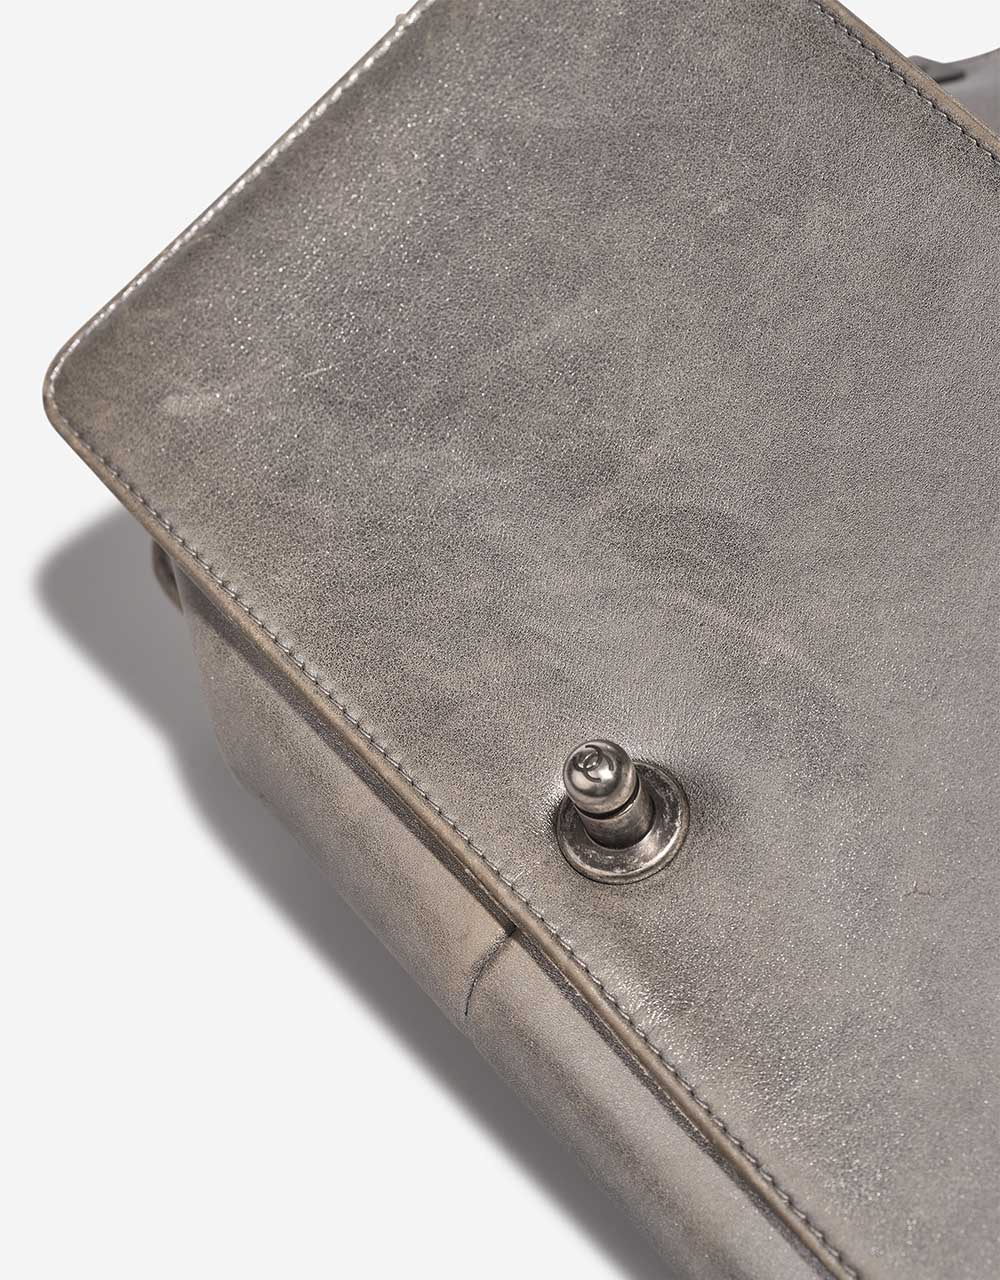 Chanel Boy NewMedium Silver Gebrauchsspuren 1 | Verkaufen Sie Ihre Designer-Tasche auf Saclab.com